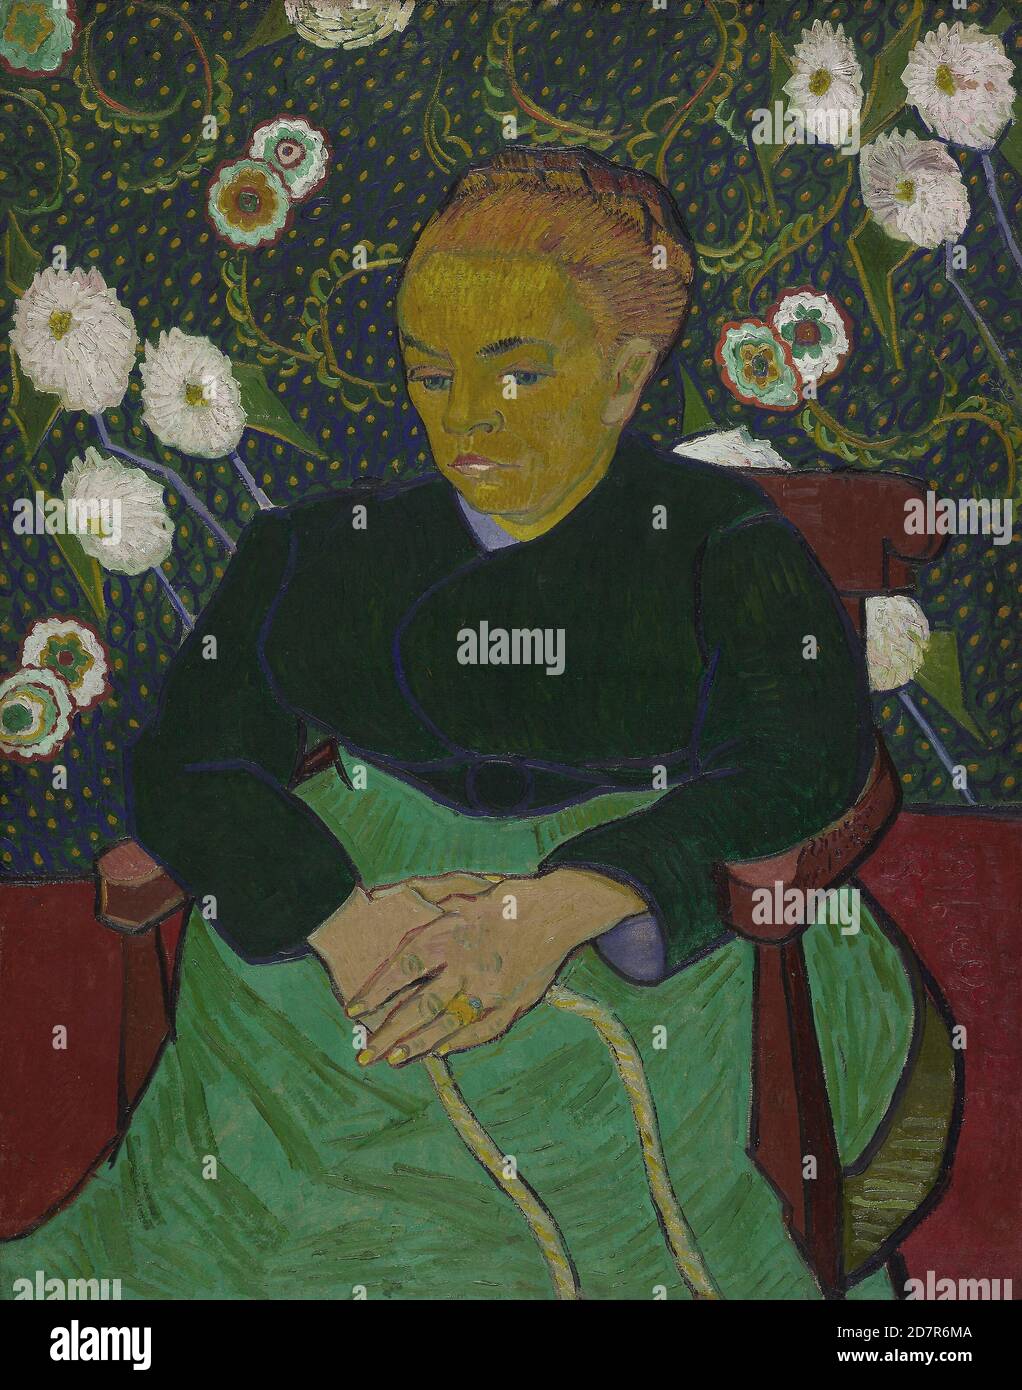 Madame Roulin balançant le berceau (la berceuse) - 1889 ; Vincent van Gogh ; néerlandais ; 1853-1890 (huile sur toile) Banque D'Images